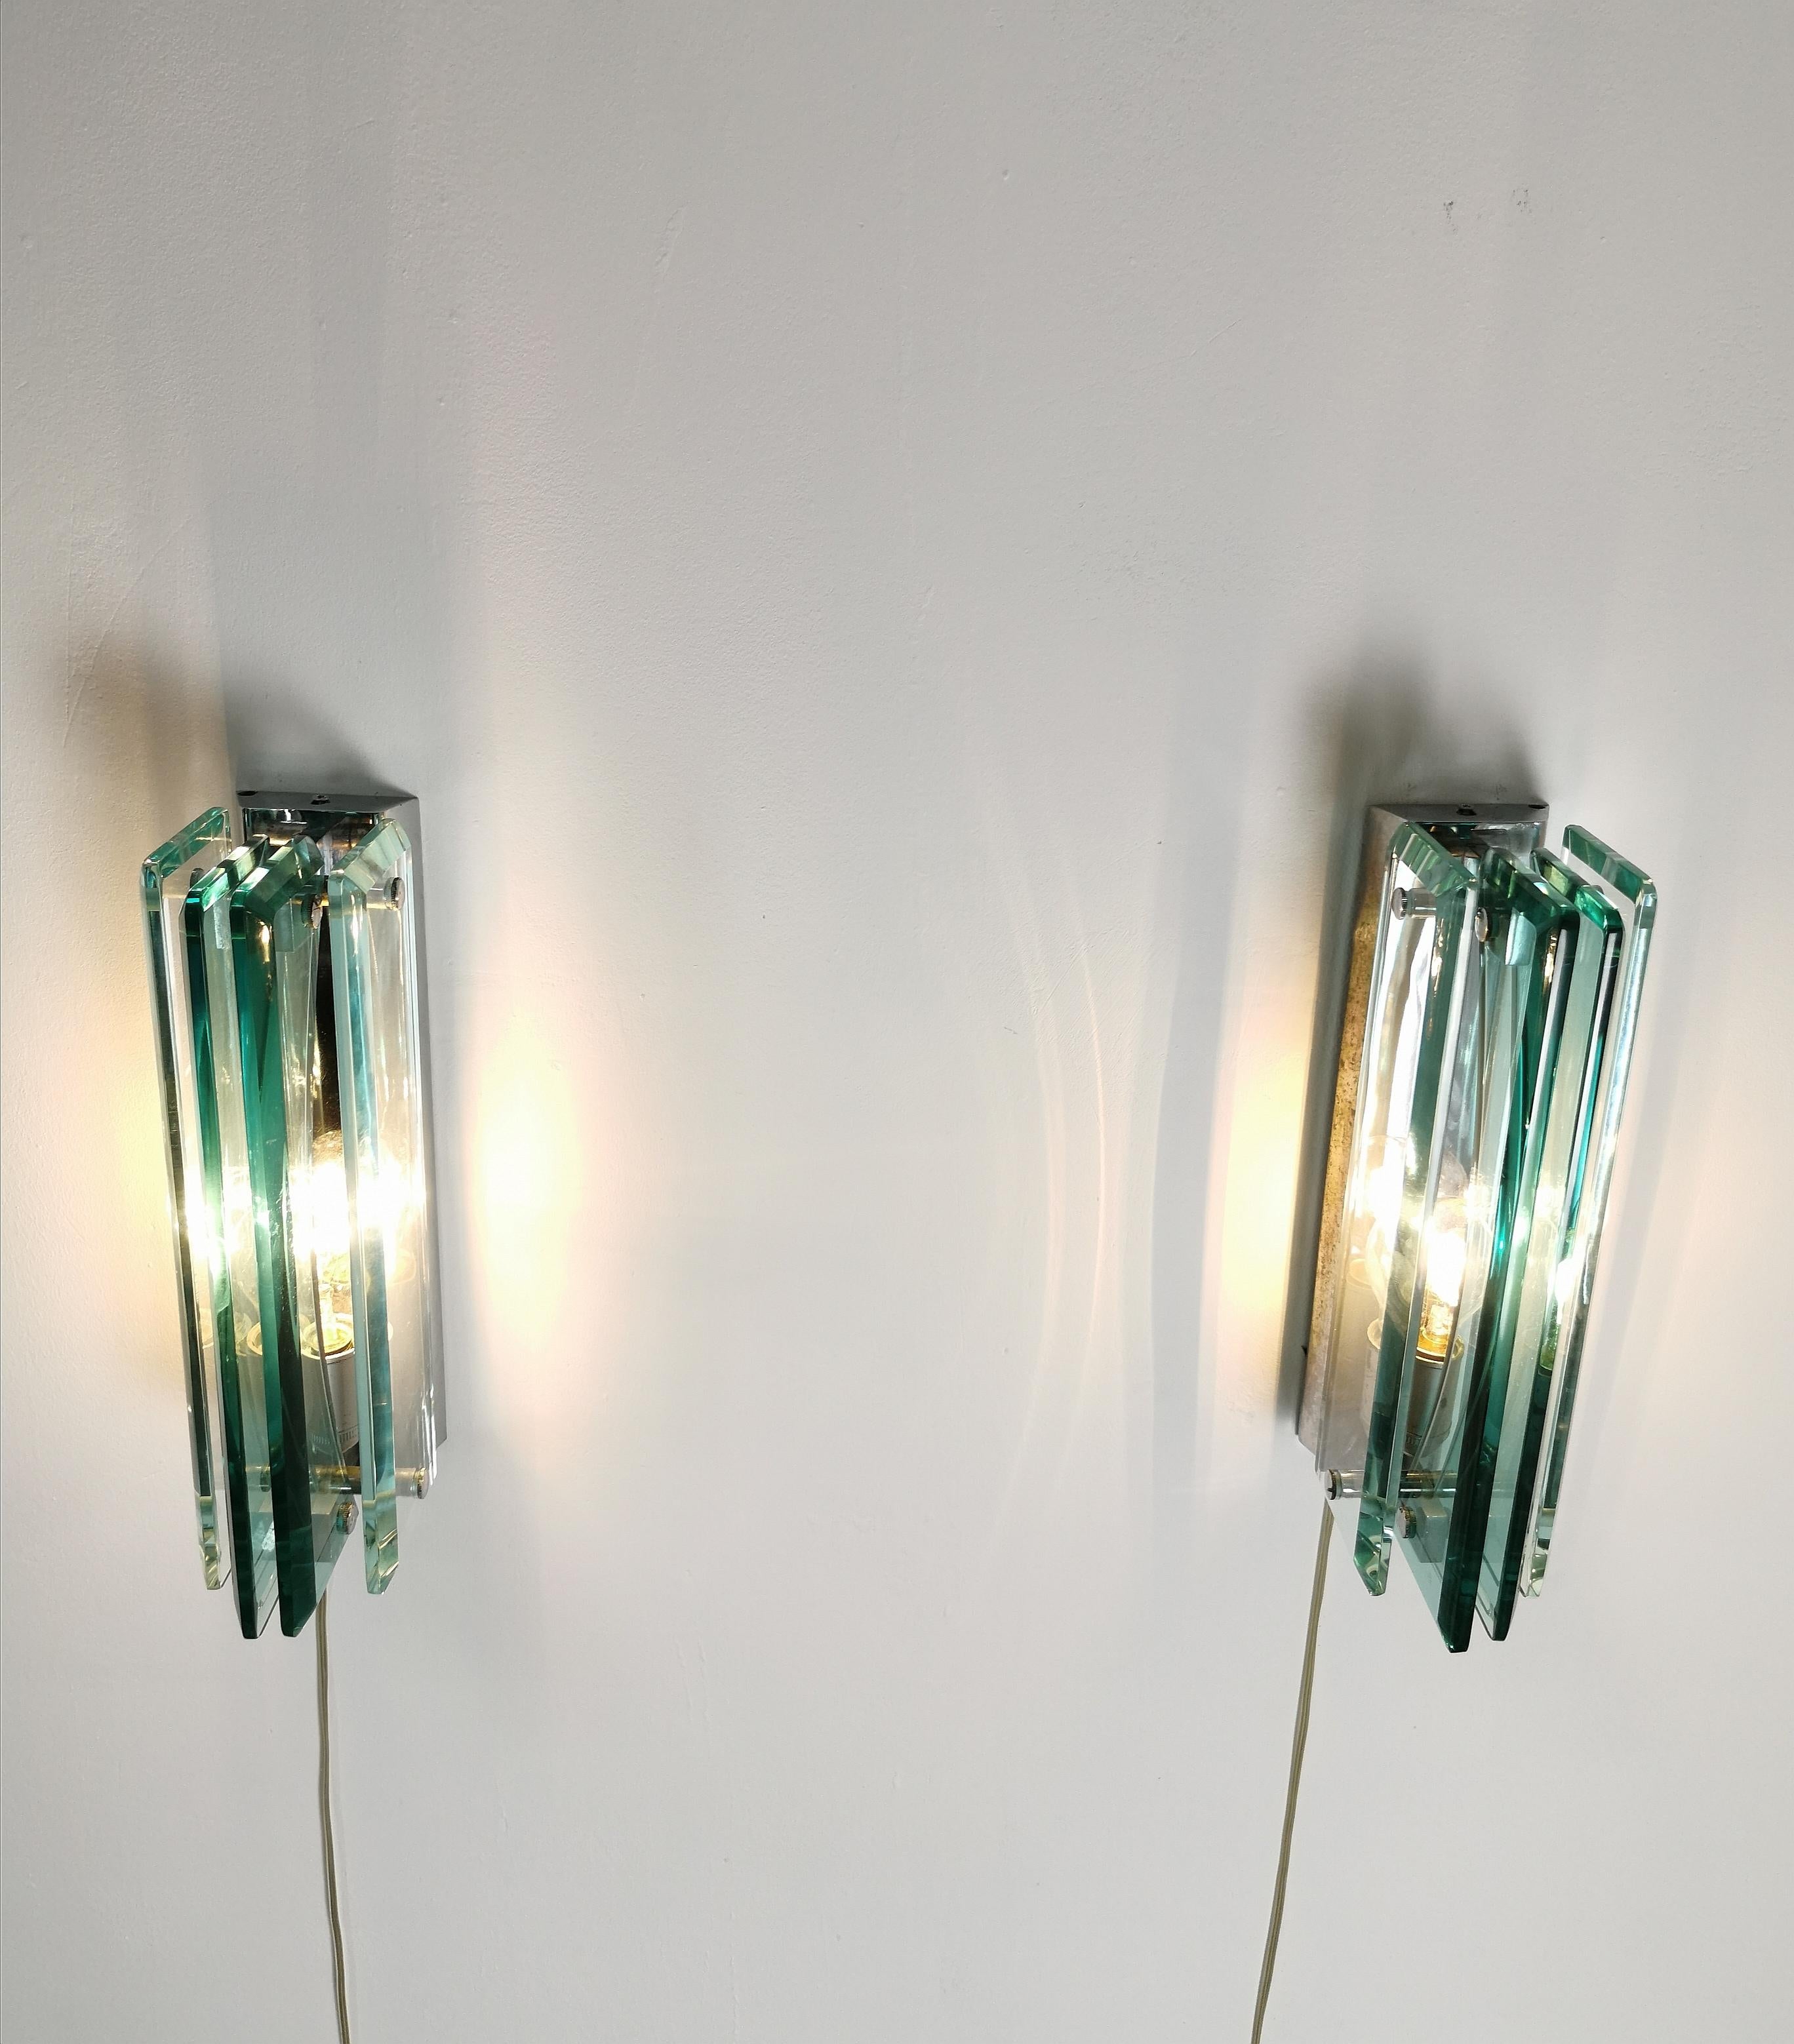 Elégante paire d'appliques produites dans les années 70 et attribuées à la célèbre société italienne Cristal Art. Chaque applique individuelle a été réalisée avec une structure en métal et laiton chromé qui supporte 2 plaques rectangulaires en verre